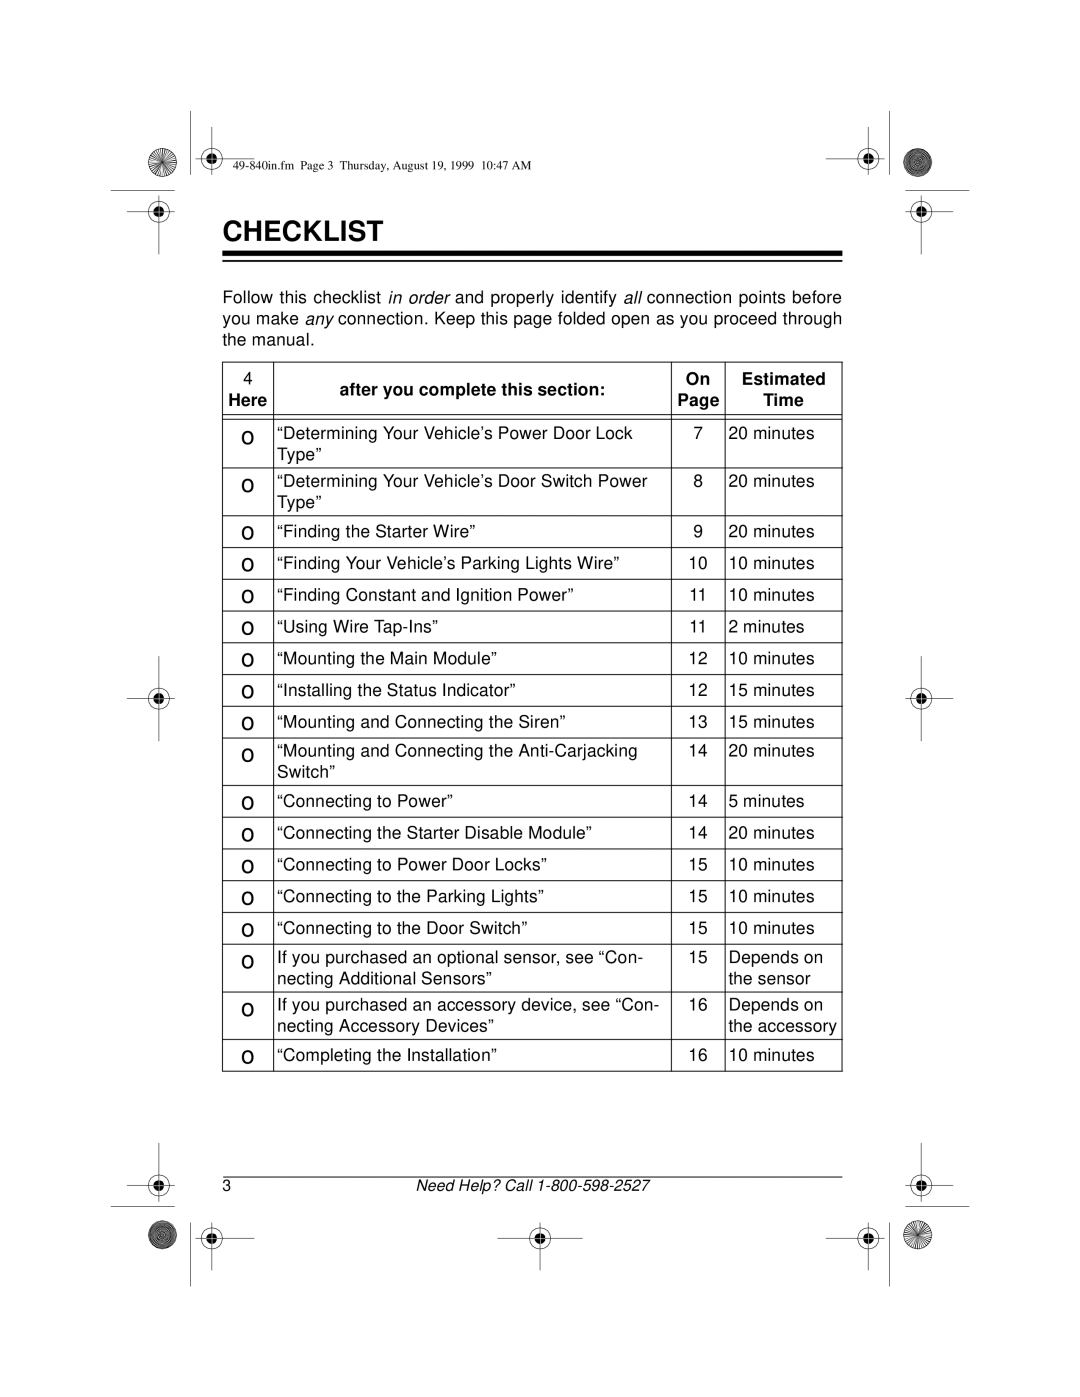 Radio Shack RS-4000 installation manual Checklist 